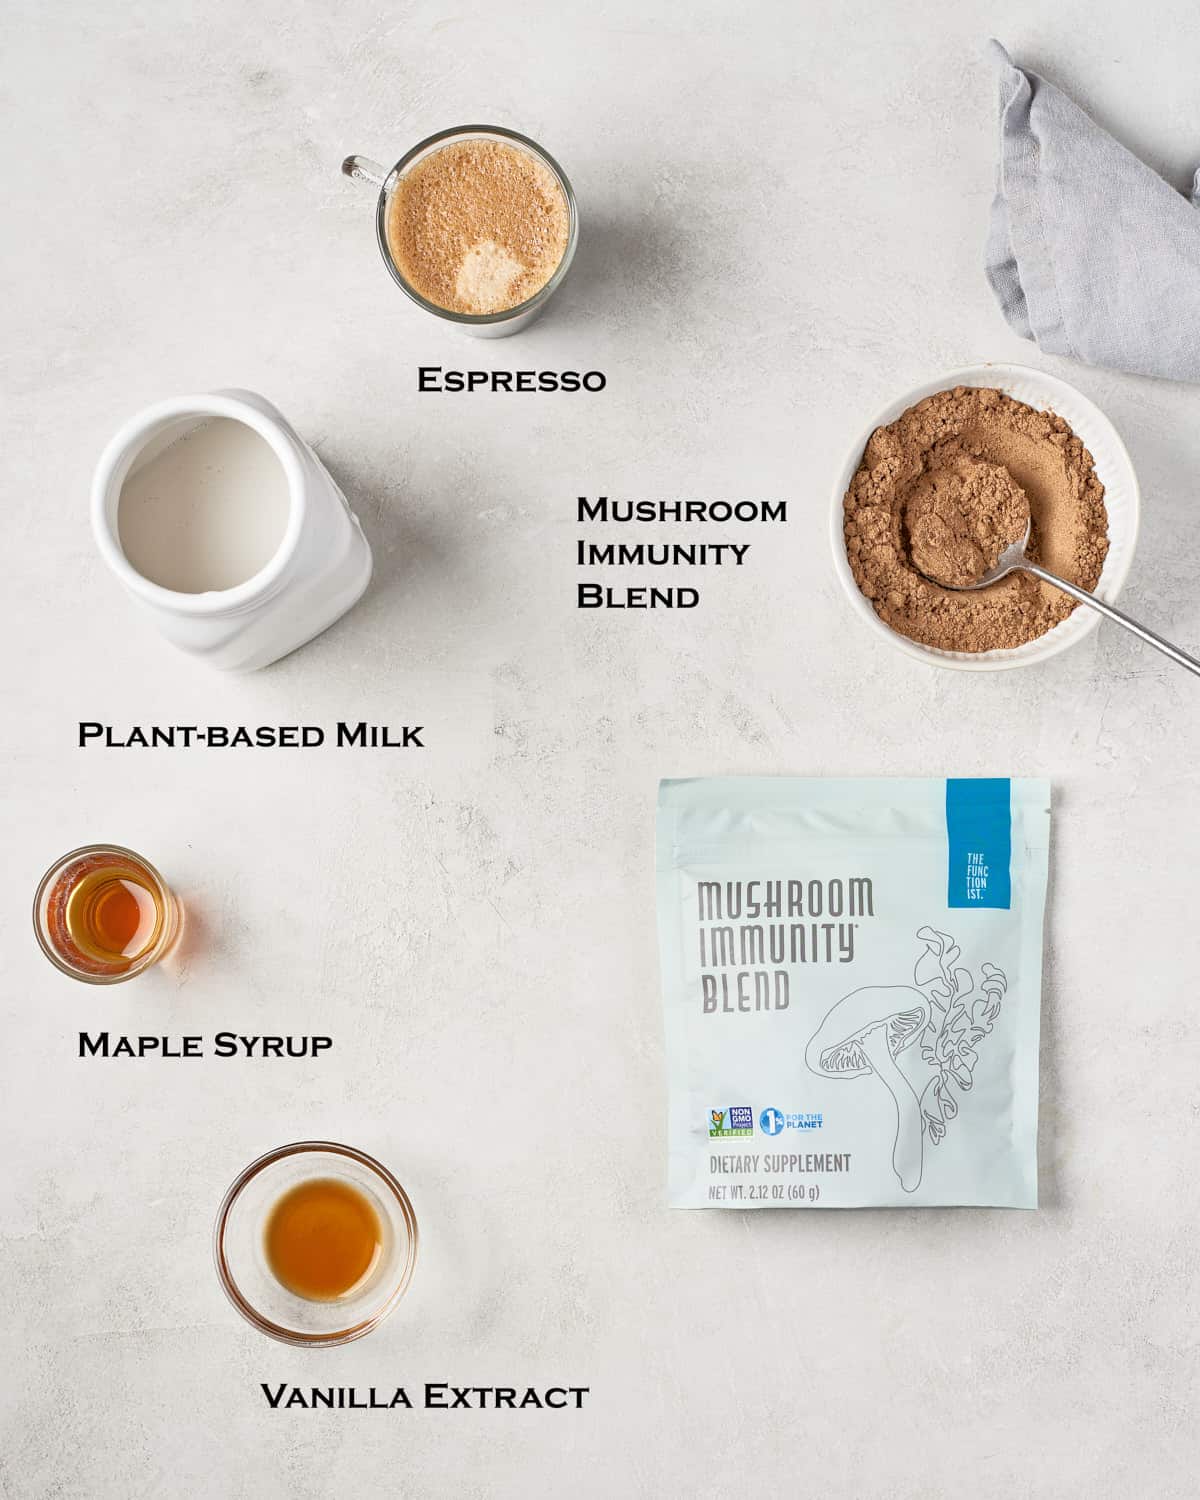 Overhead view of mushroom latte ingredients.